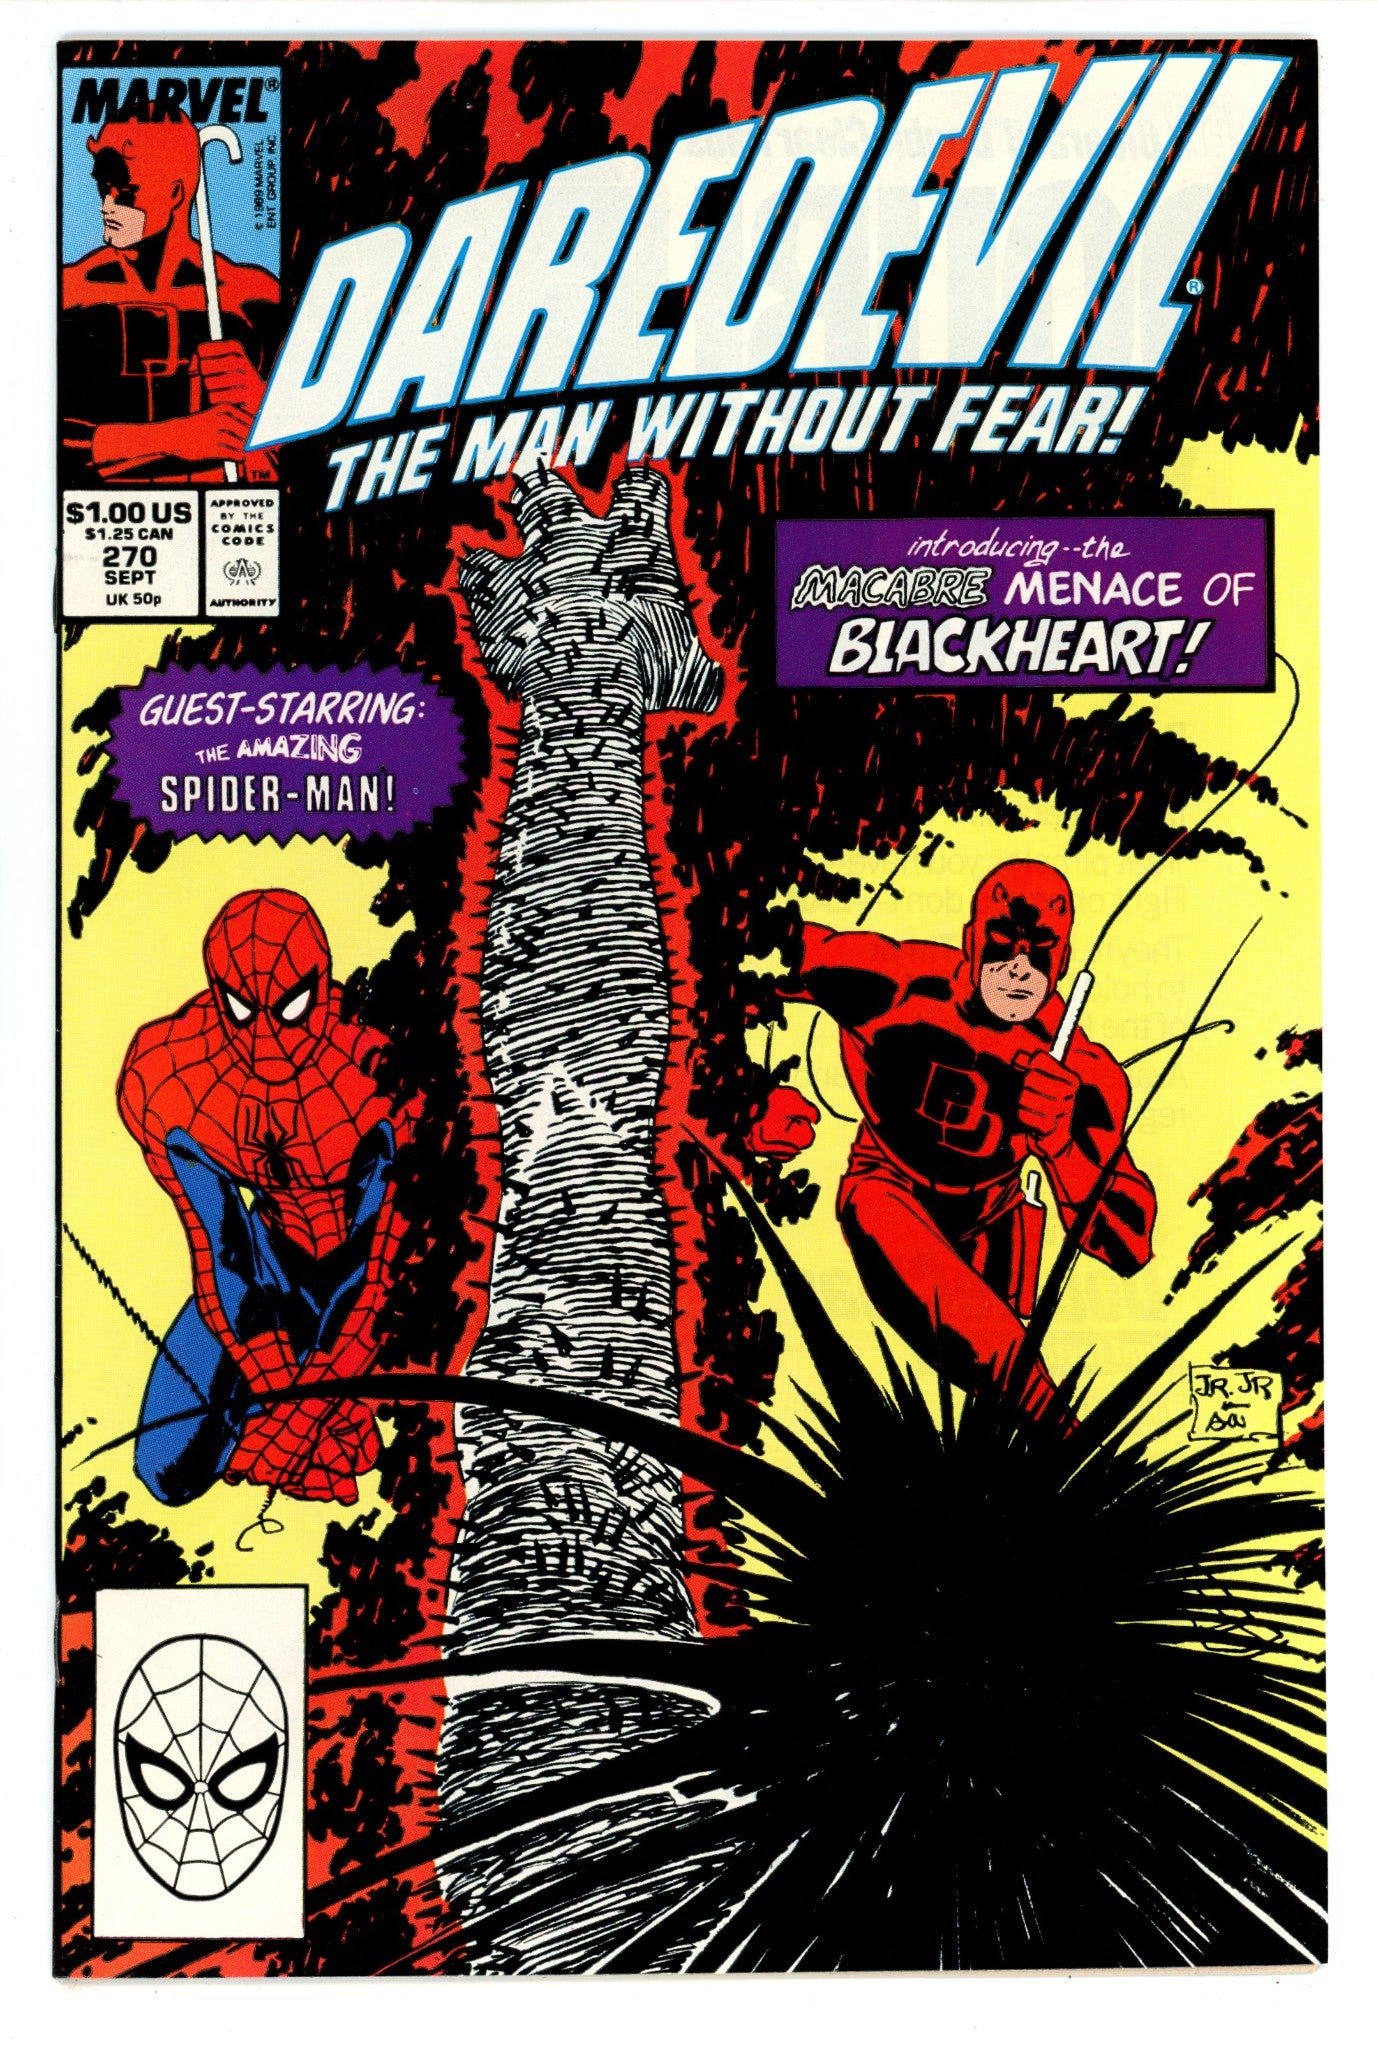 Daredevil Vol 1 270 VF+ (8.5) (1989) 